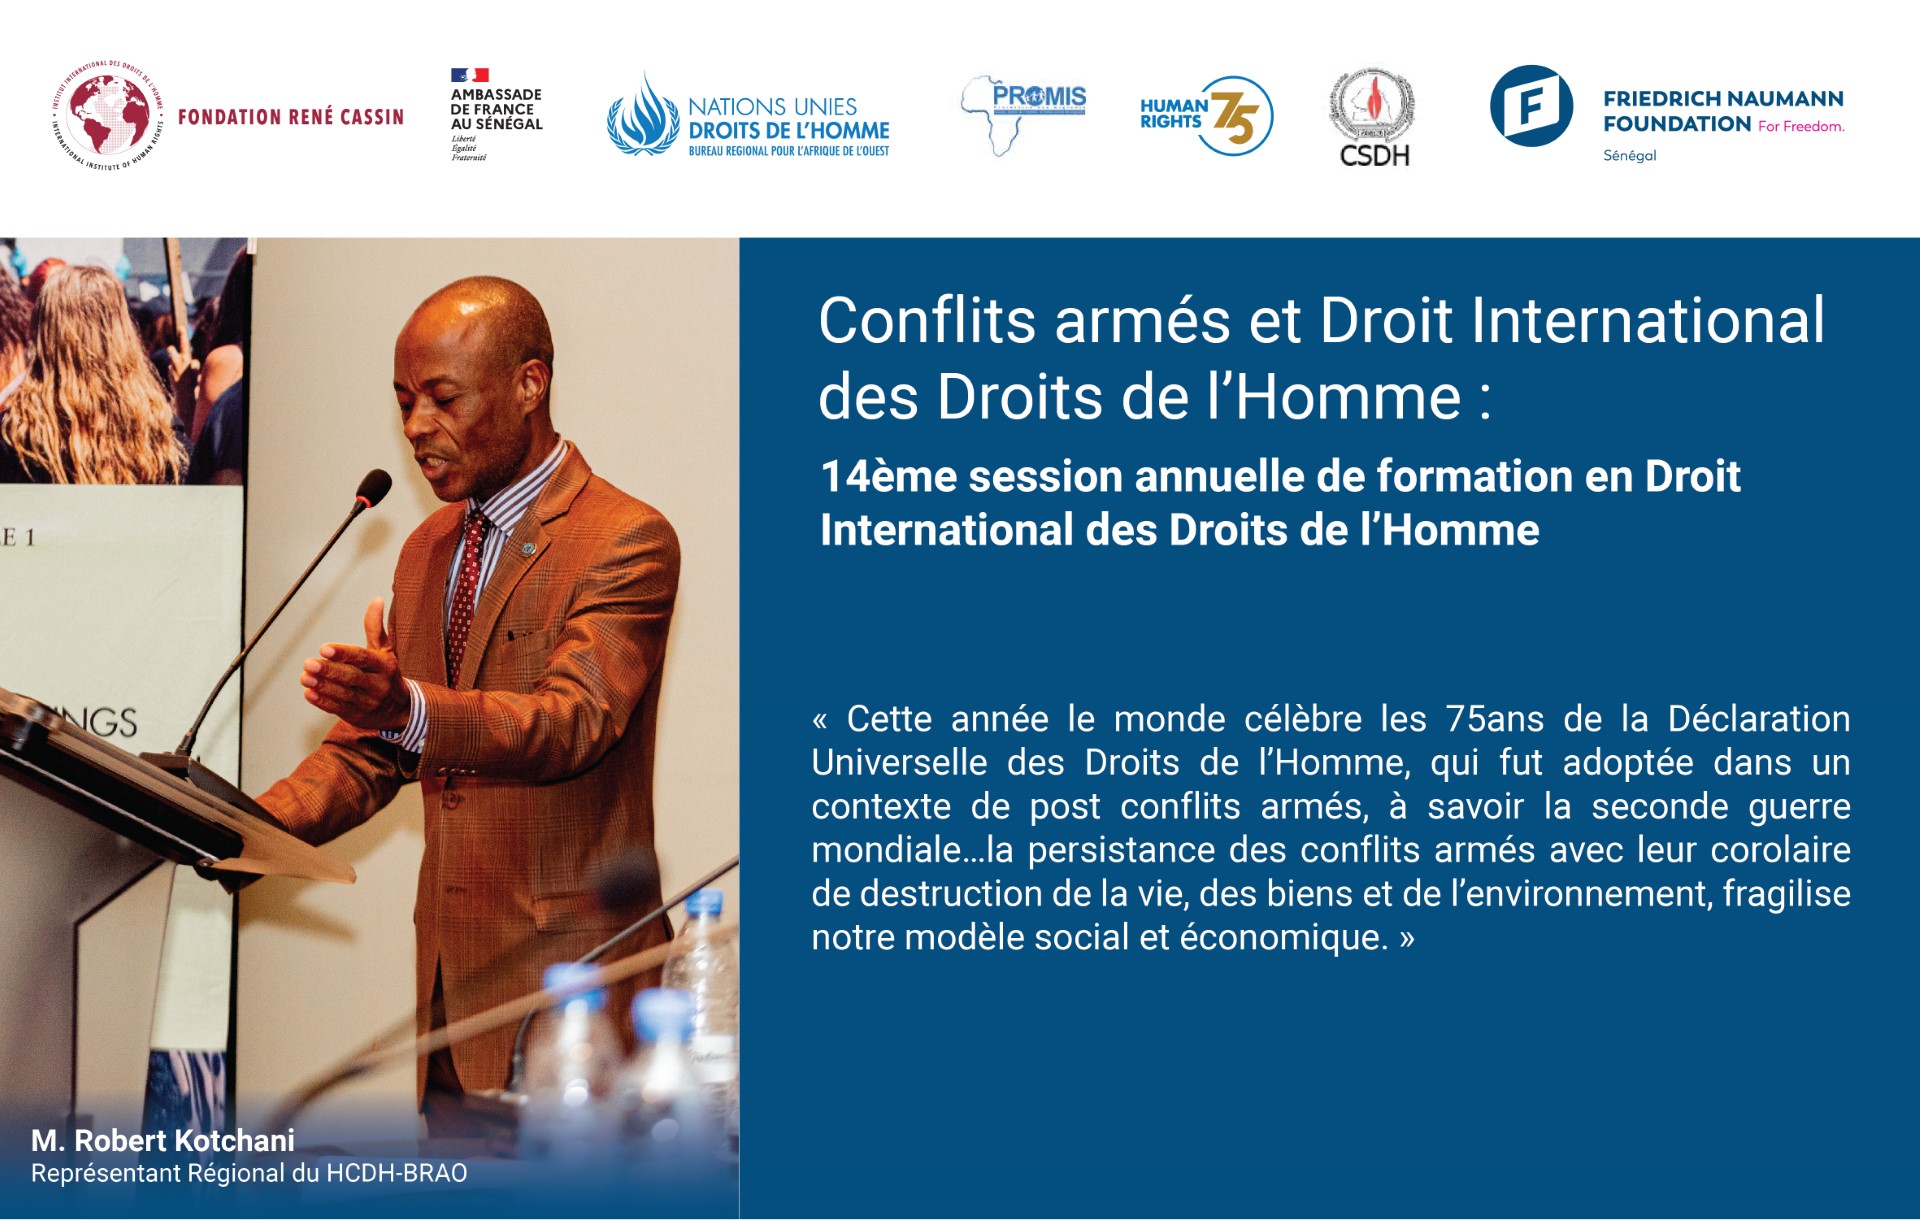 Conflits armés et Droit International des Droits de l'Homme ; thème de la 14ème session annuelle de formation en Droit International des Droits de l'Homme